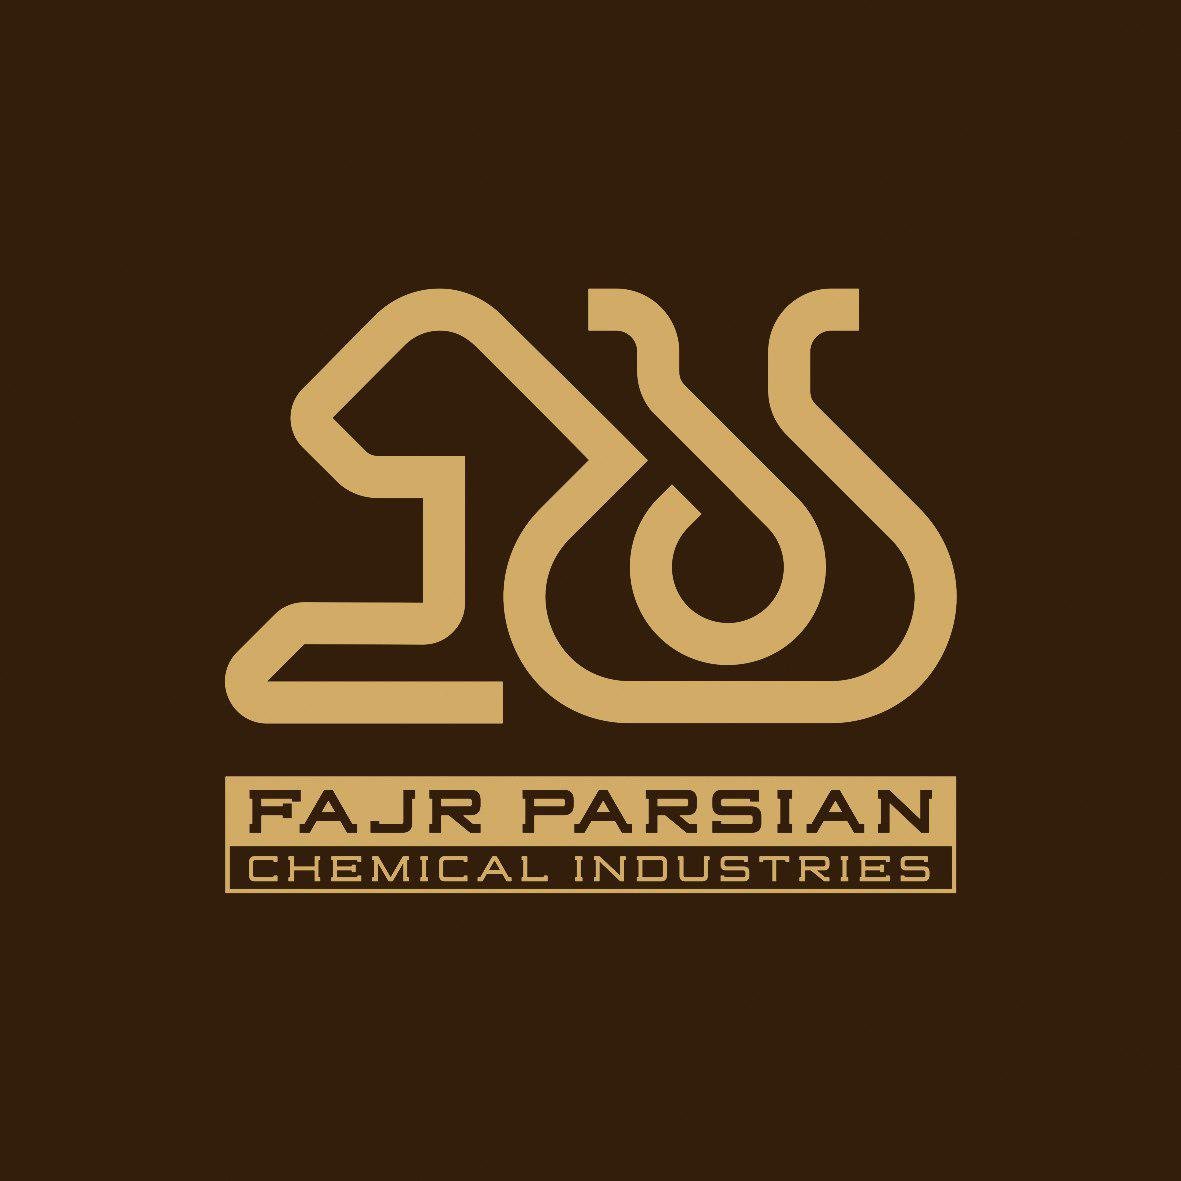 مهندس صنایع | Industrial Engineer - شرکت فجر پارسیان | Fajr parsian